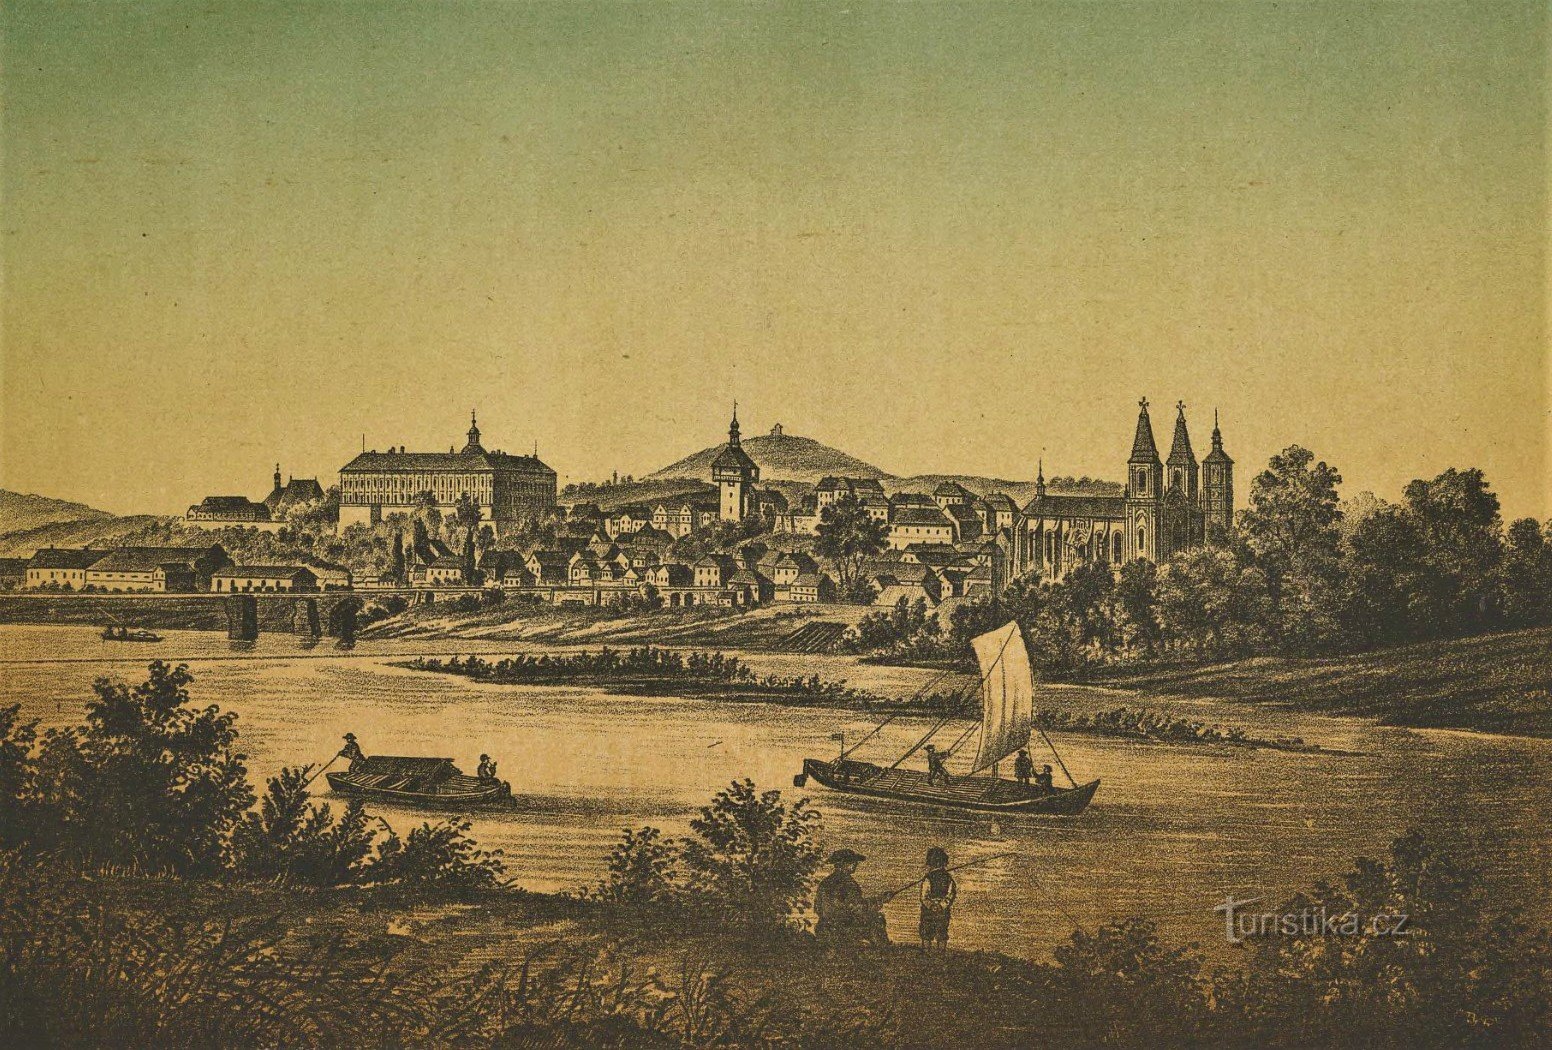 Navigarea pe Elba lângă Roudnice nad Labem la începutul celei de-a doua jumătate a secolului al XIX-lea